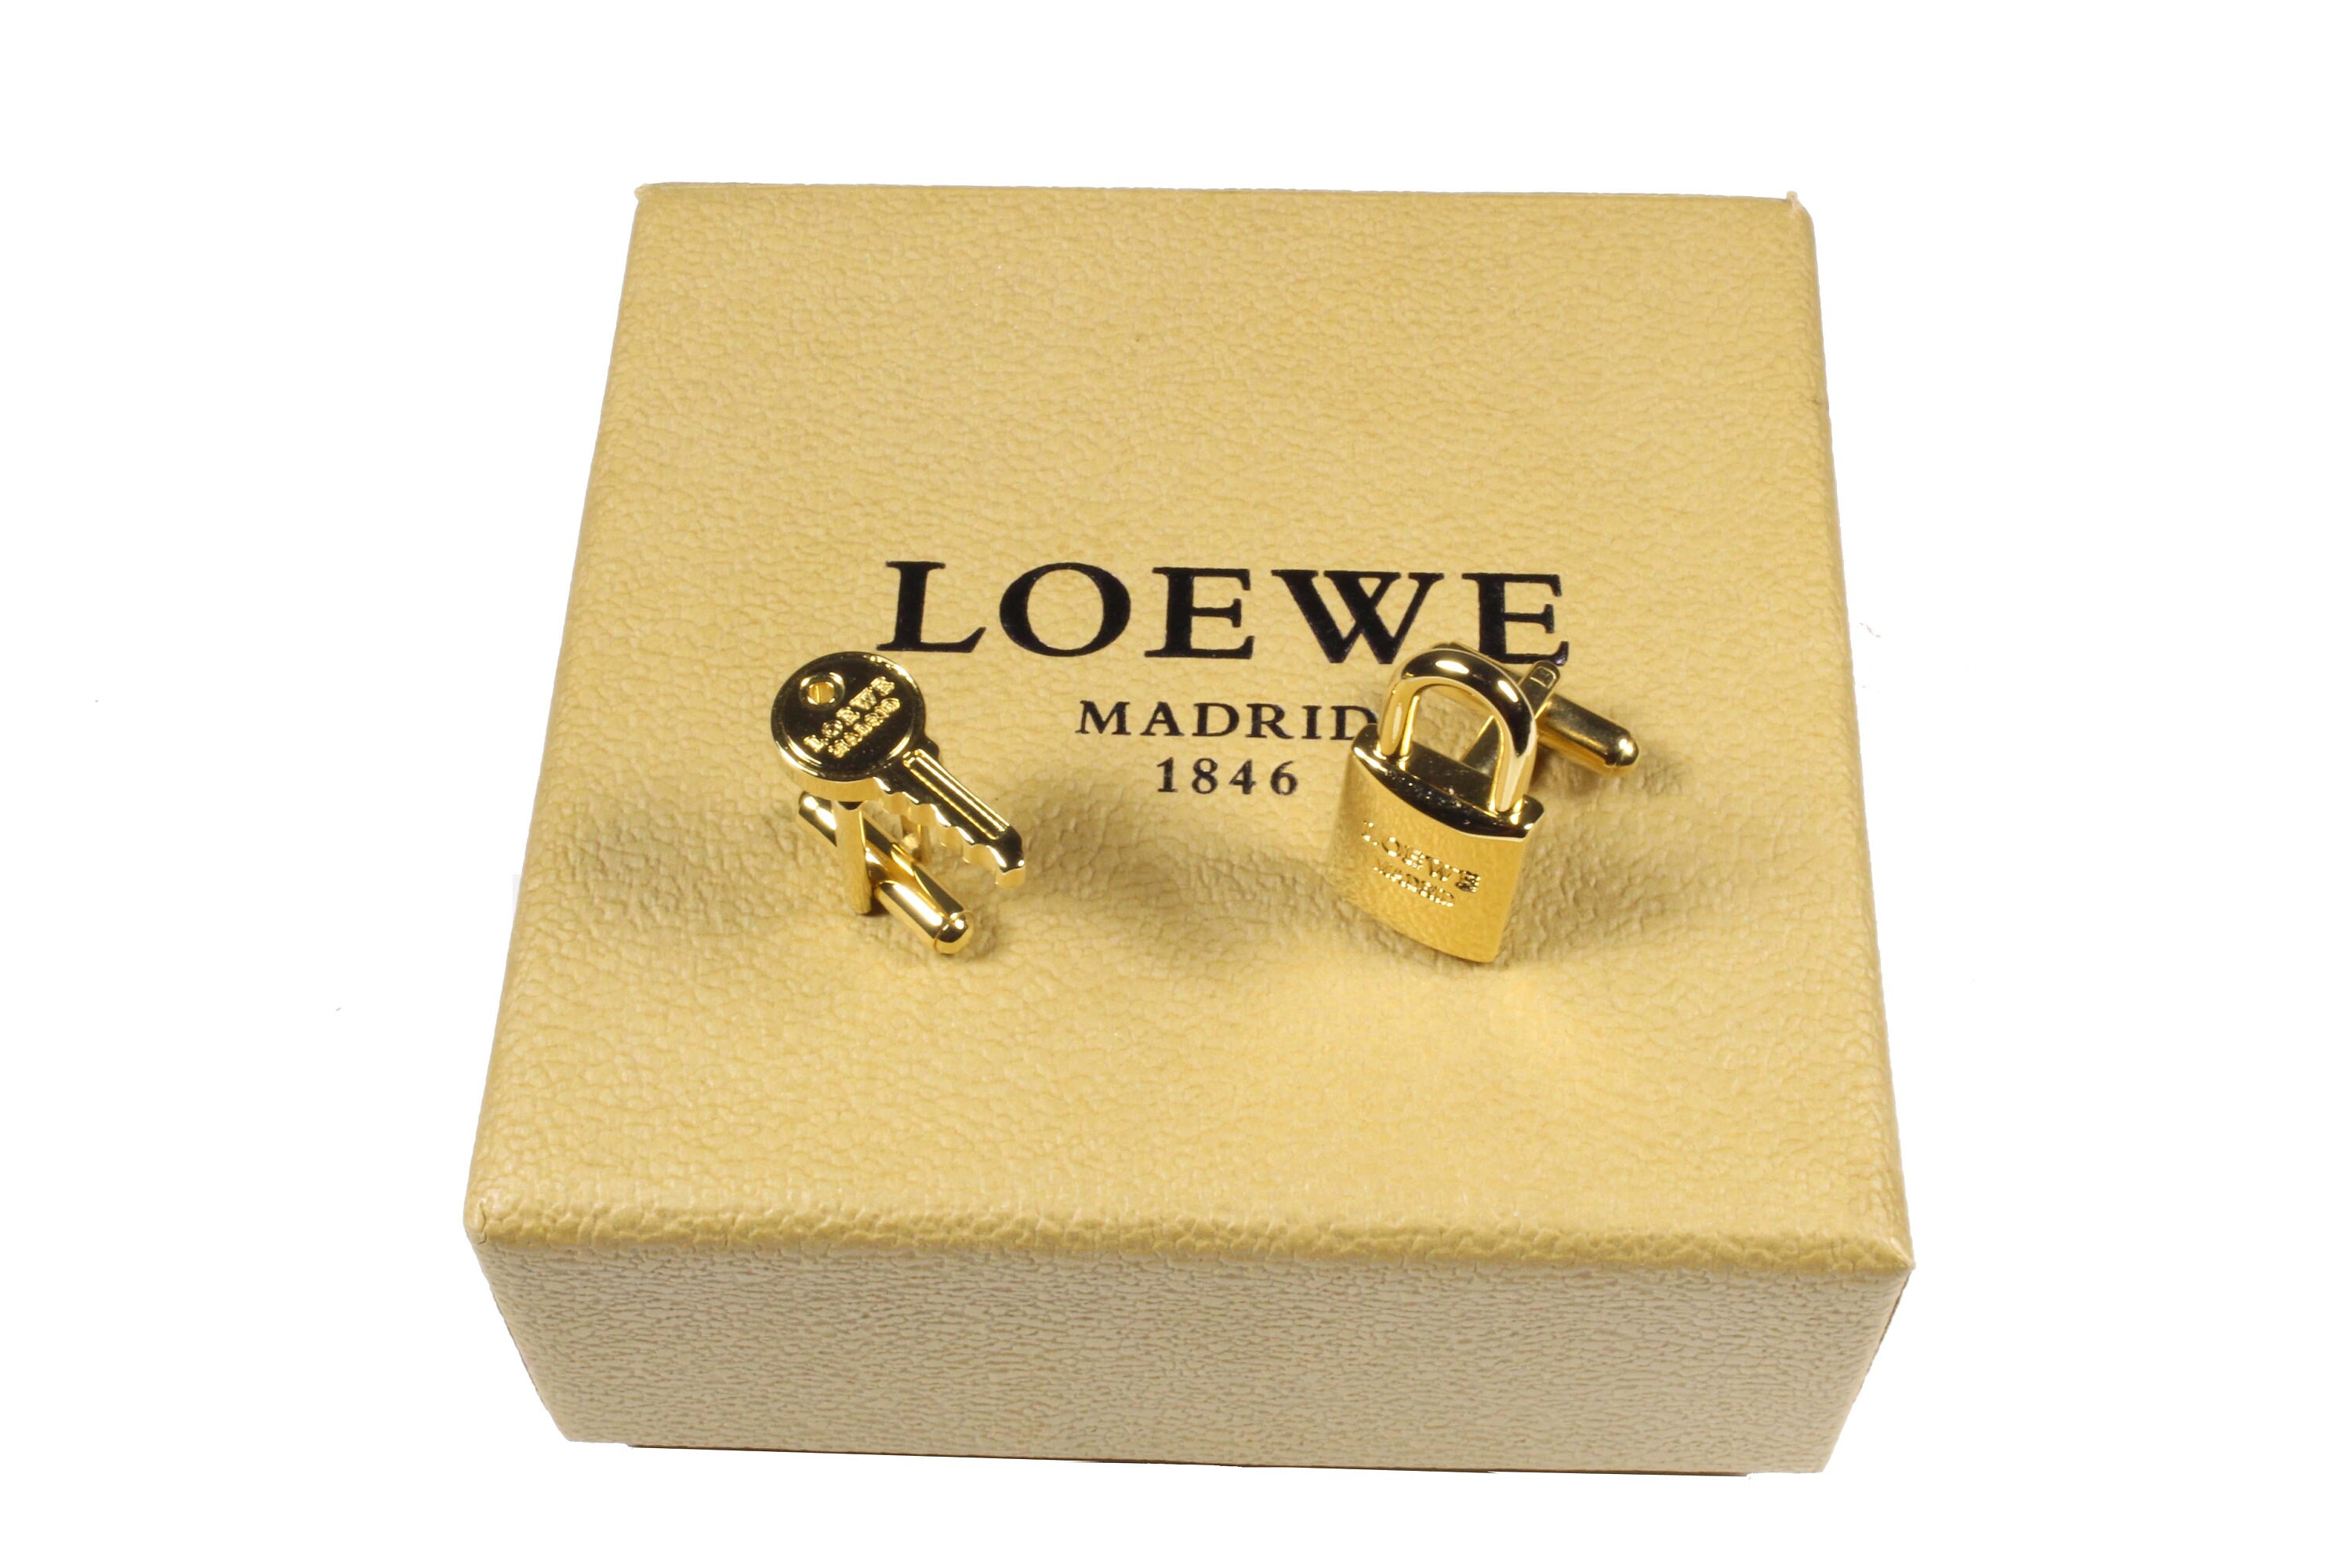 Loewe Jewelry - Etsy